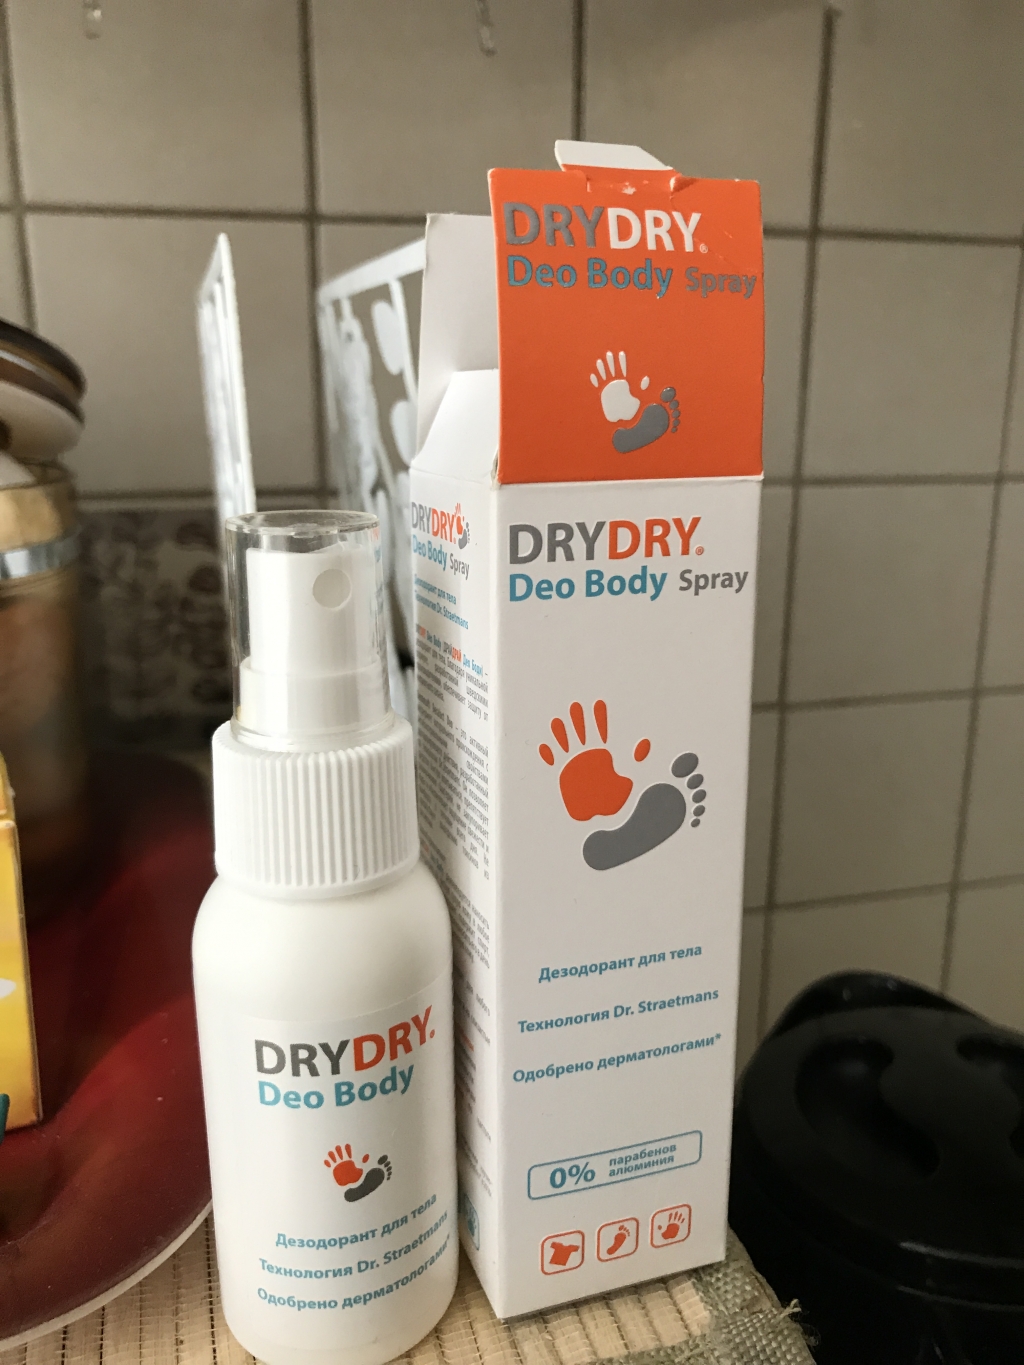 Dry Dry Deo Body